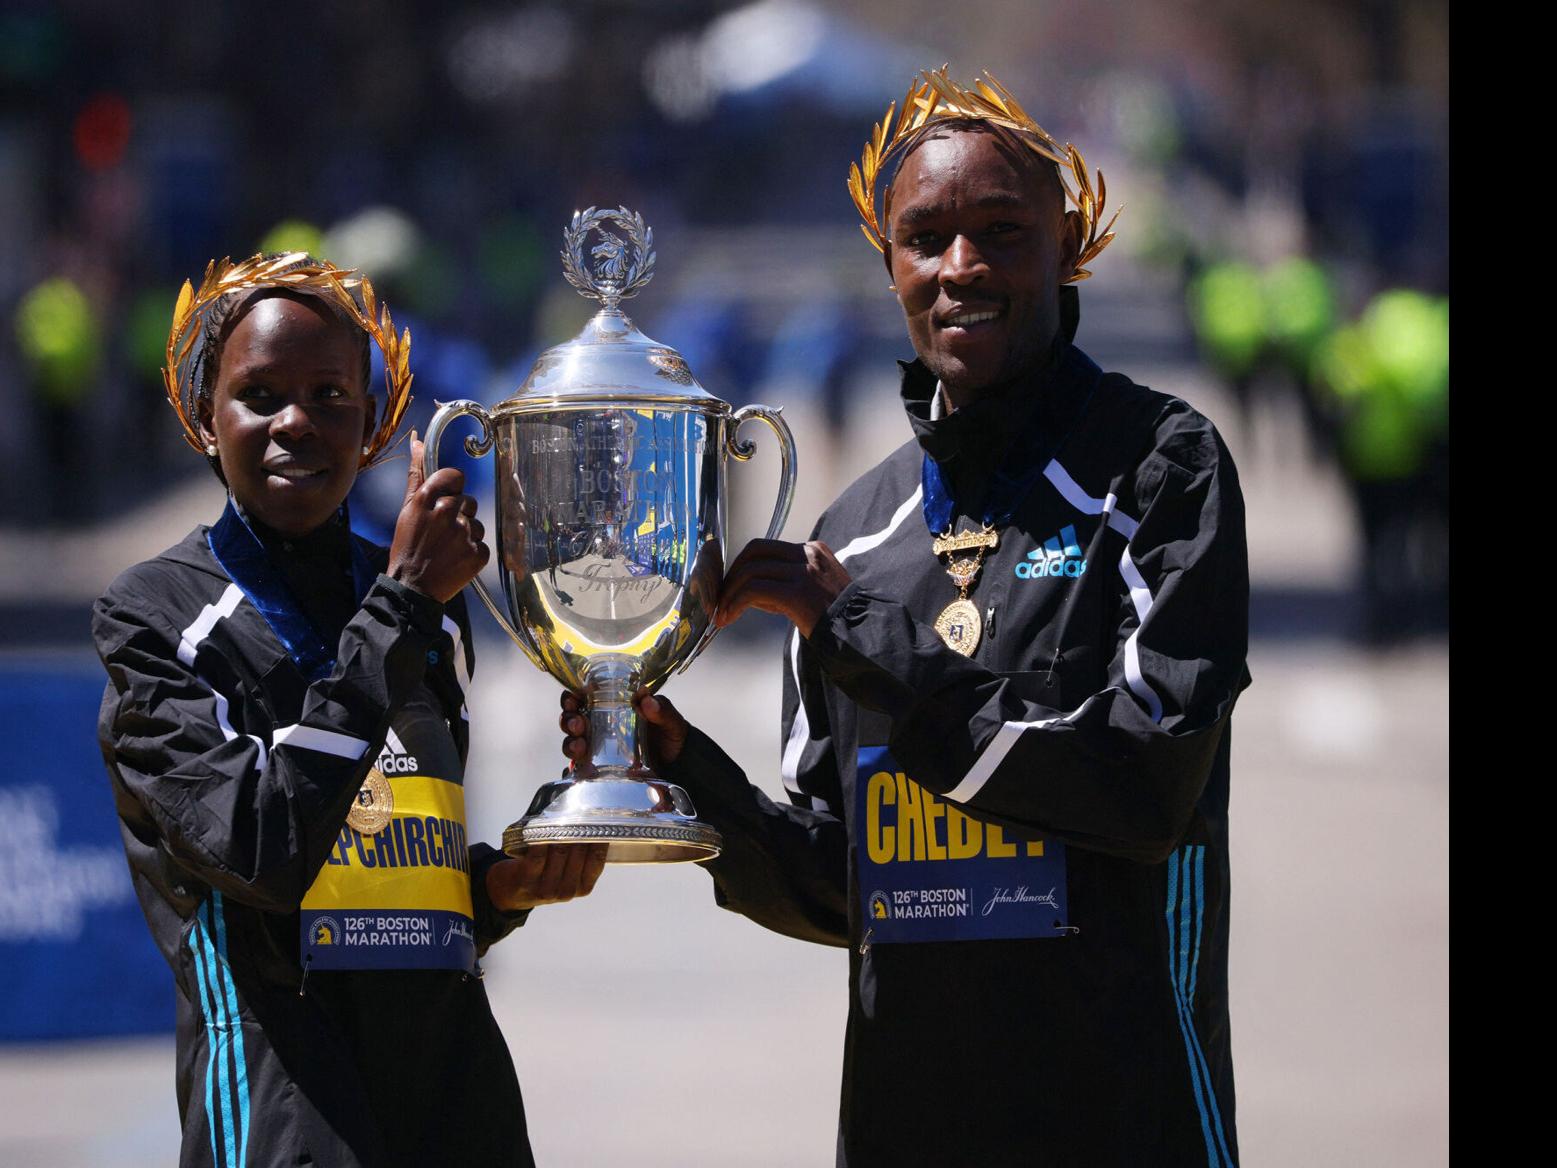 Kenya dominates the 2022 Boston Marathon, as Evans Chebet and